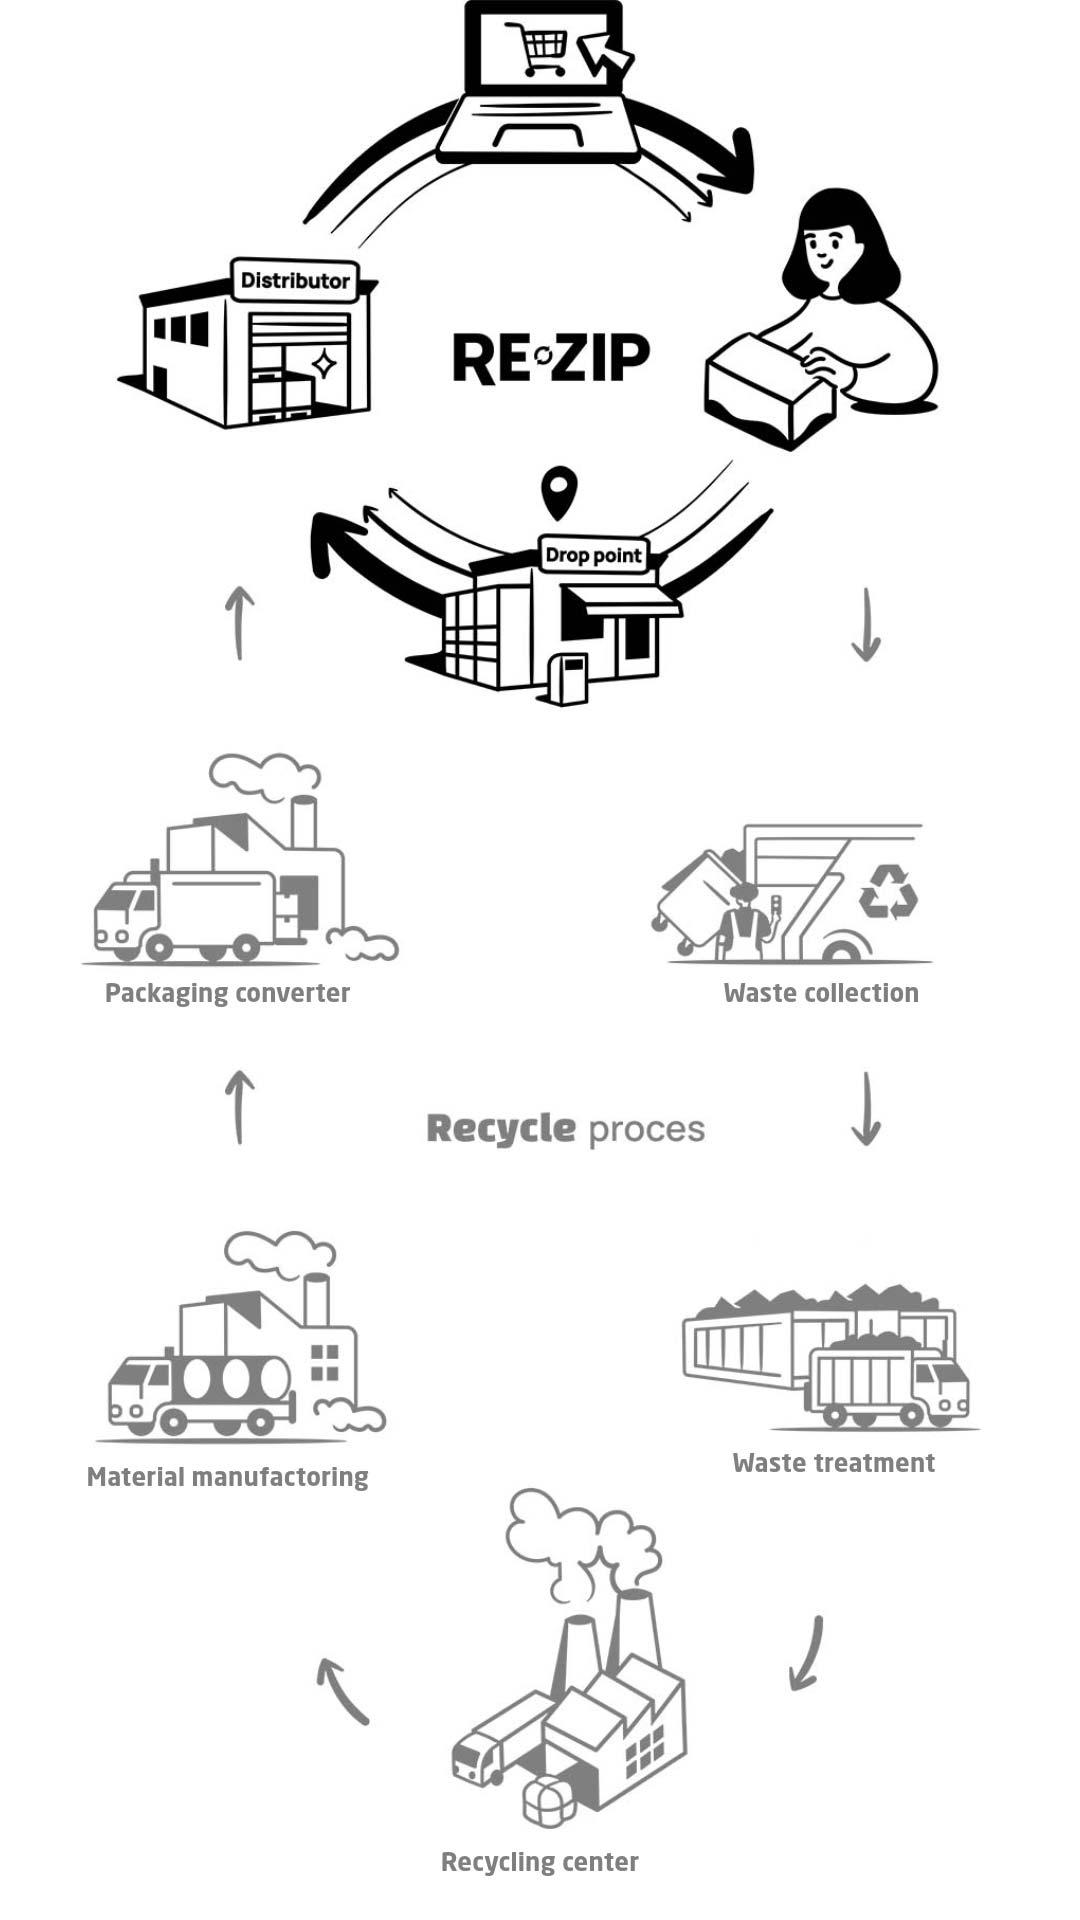 Schema van reuse versus recycling single-use packaging